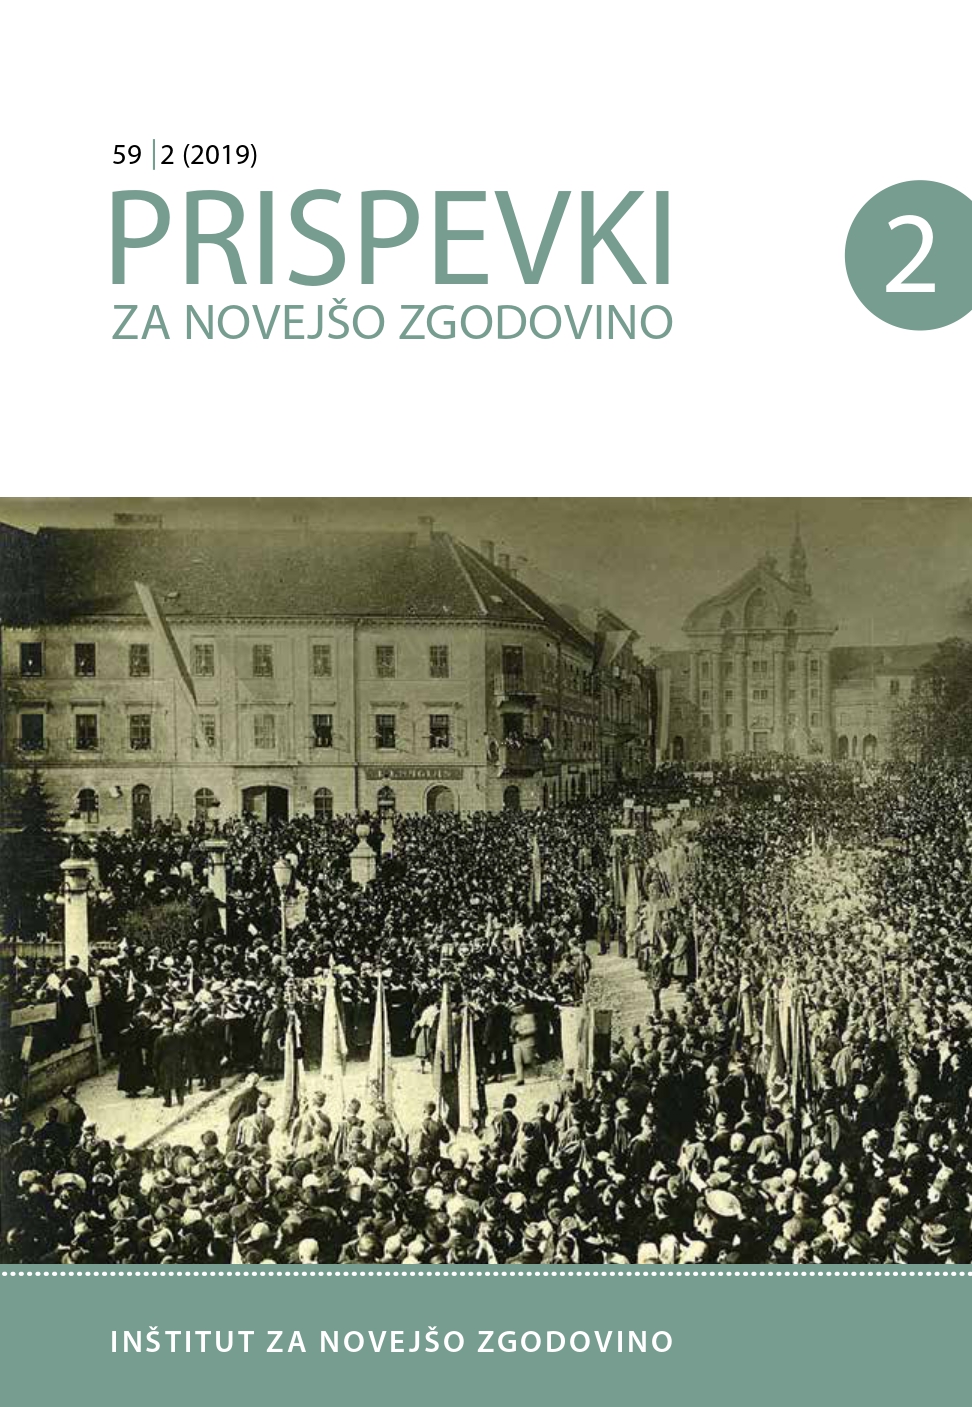 Profesorji Ivan Žolger, Ivan Tomšič in Stanko Peterin ter njihovi prispevki k nastanku slovenske države